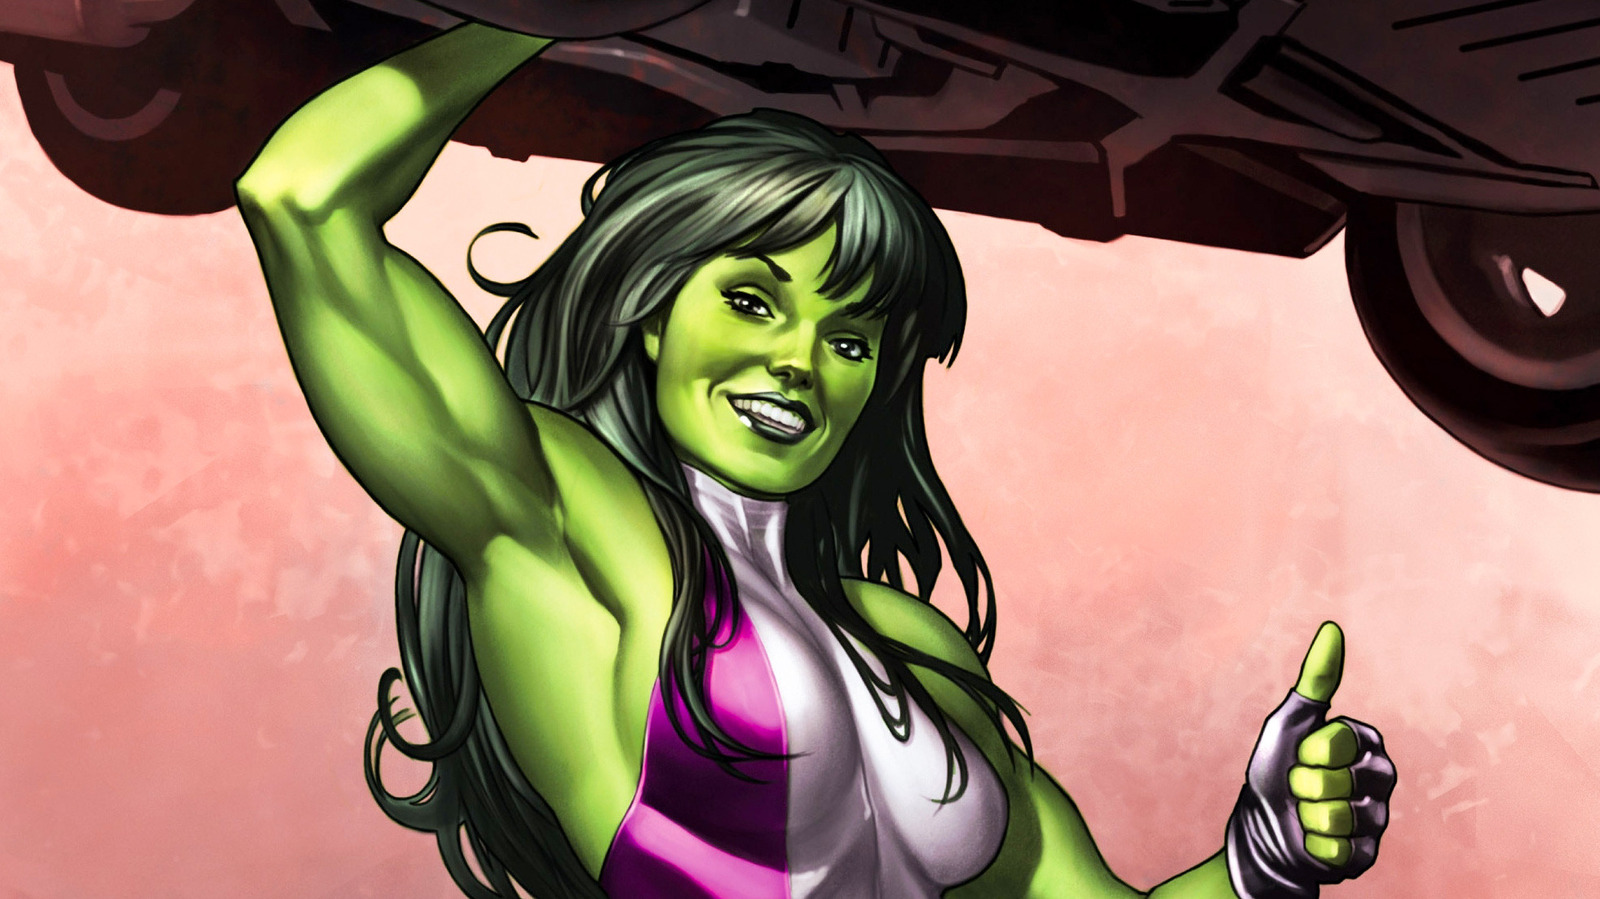 اغرب النظريات والحقائق عن شخصية She-Hulk التي تداولها المعجبين 1